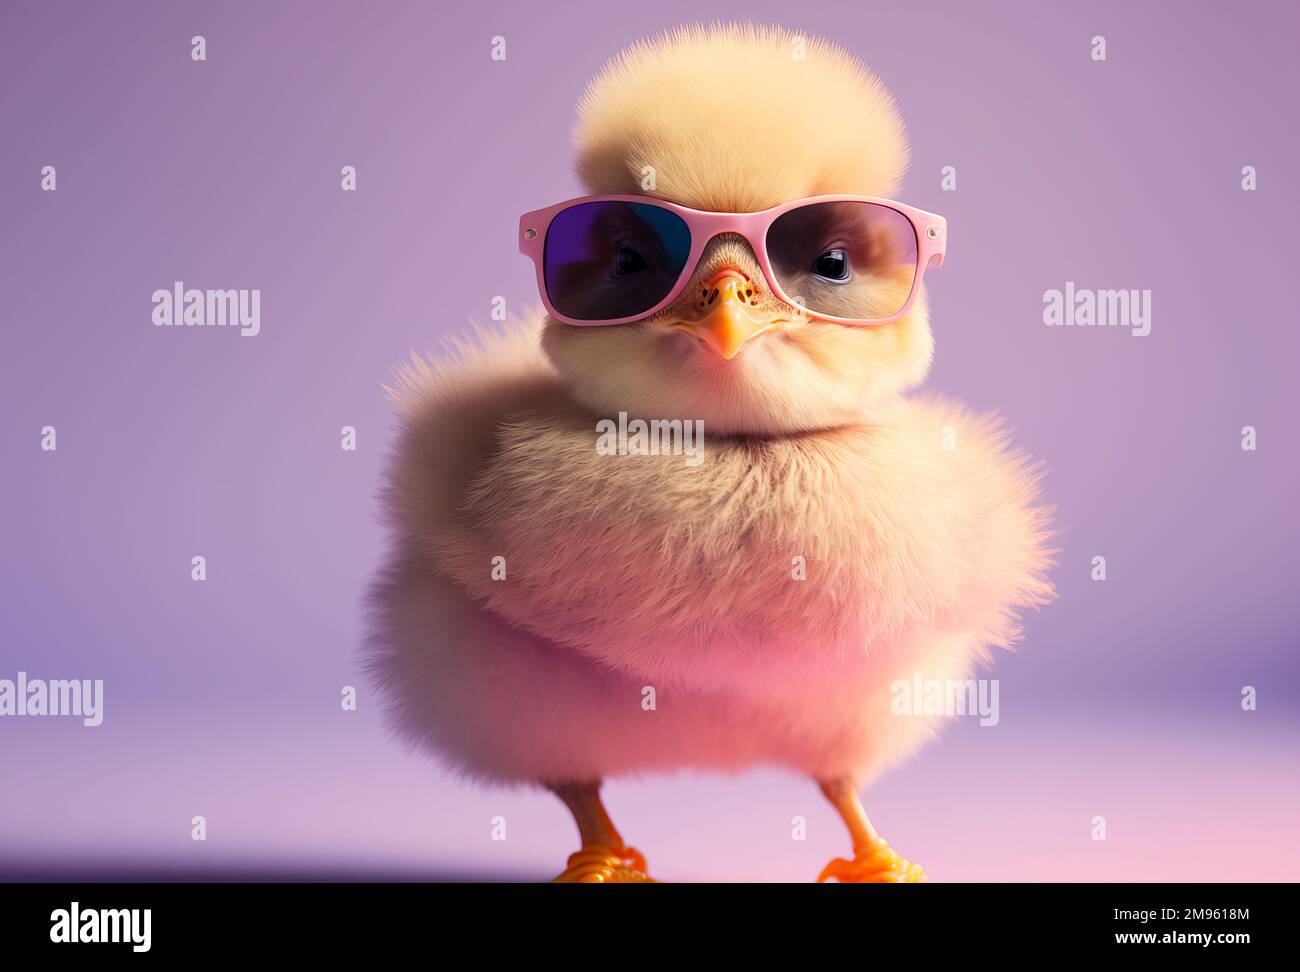 Animal con gafas fotografías e imágenes de alta resolución - Página 9 -  Alamy